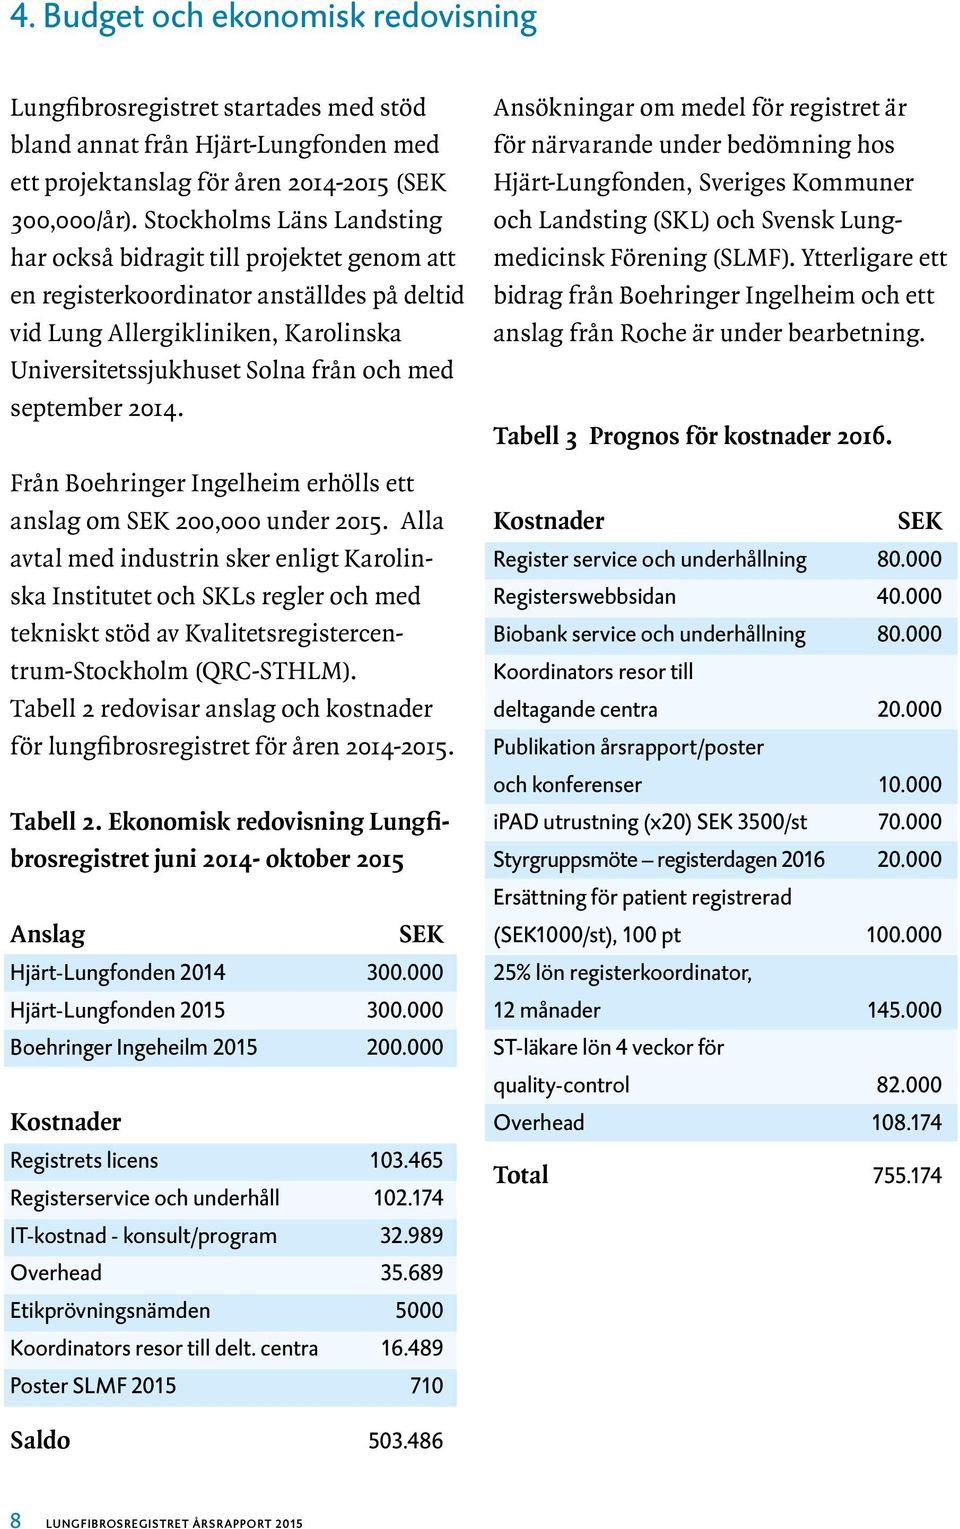 september 2014. Från Boehringer Ingelheim erhölls ett anslag om SEK 200,000 under 2015.